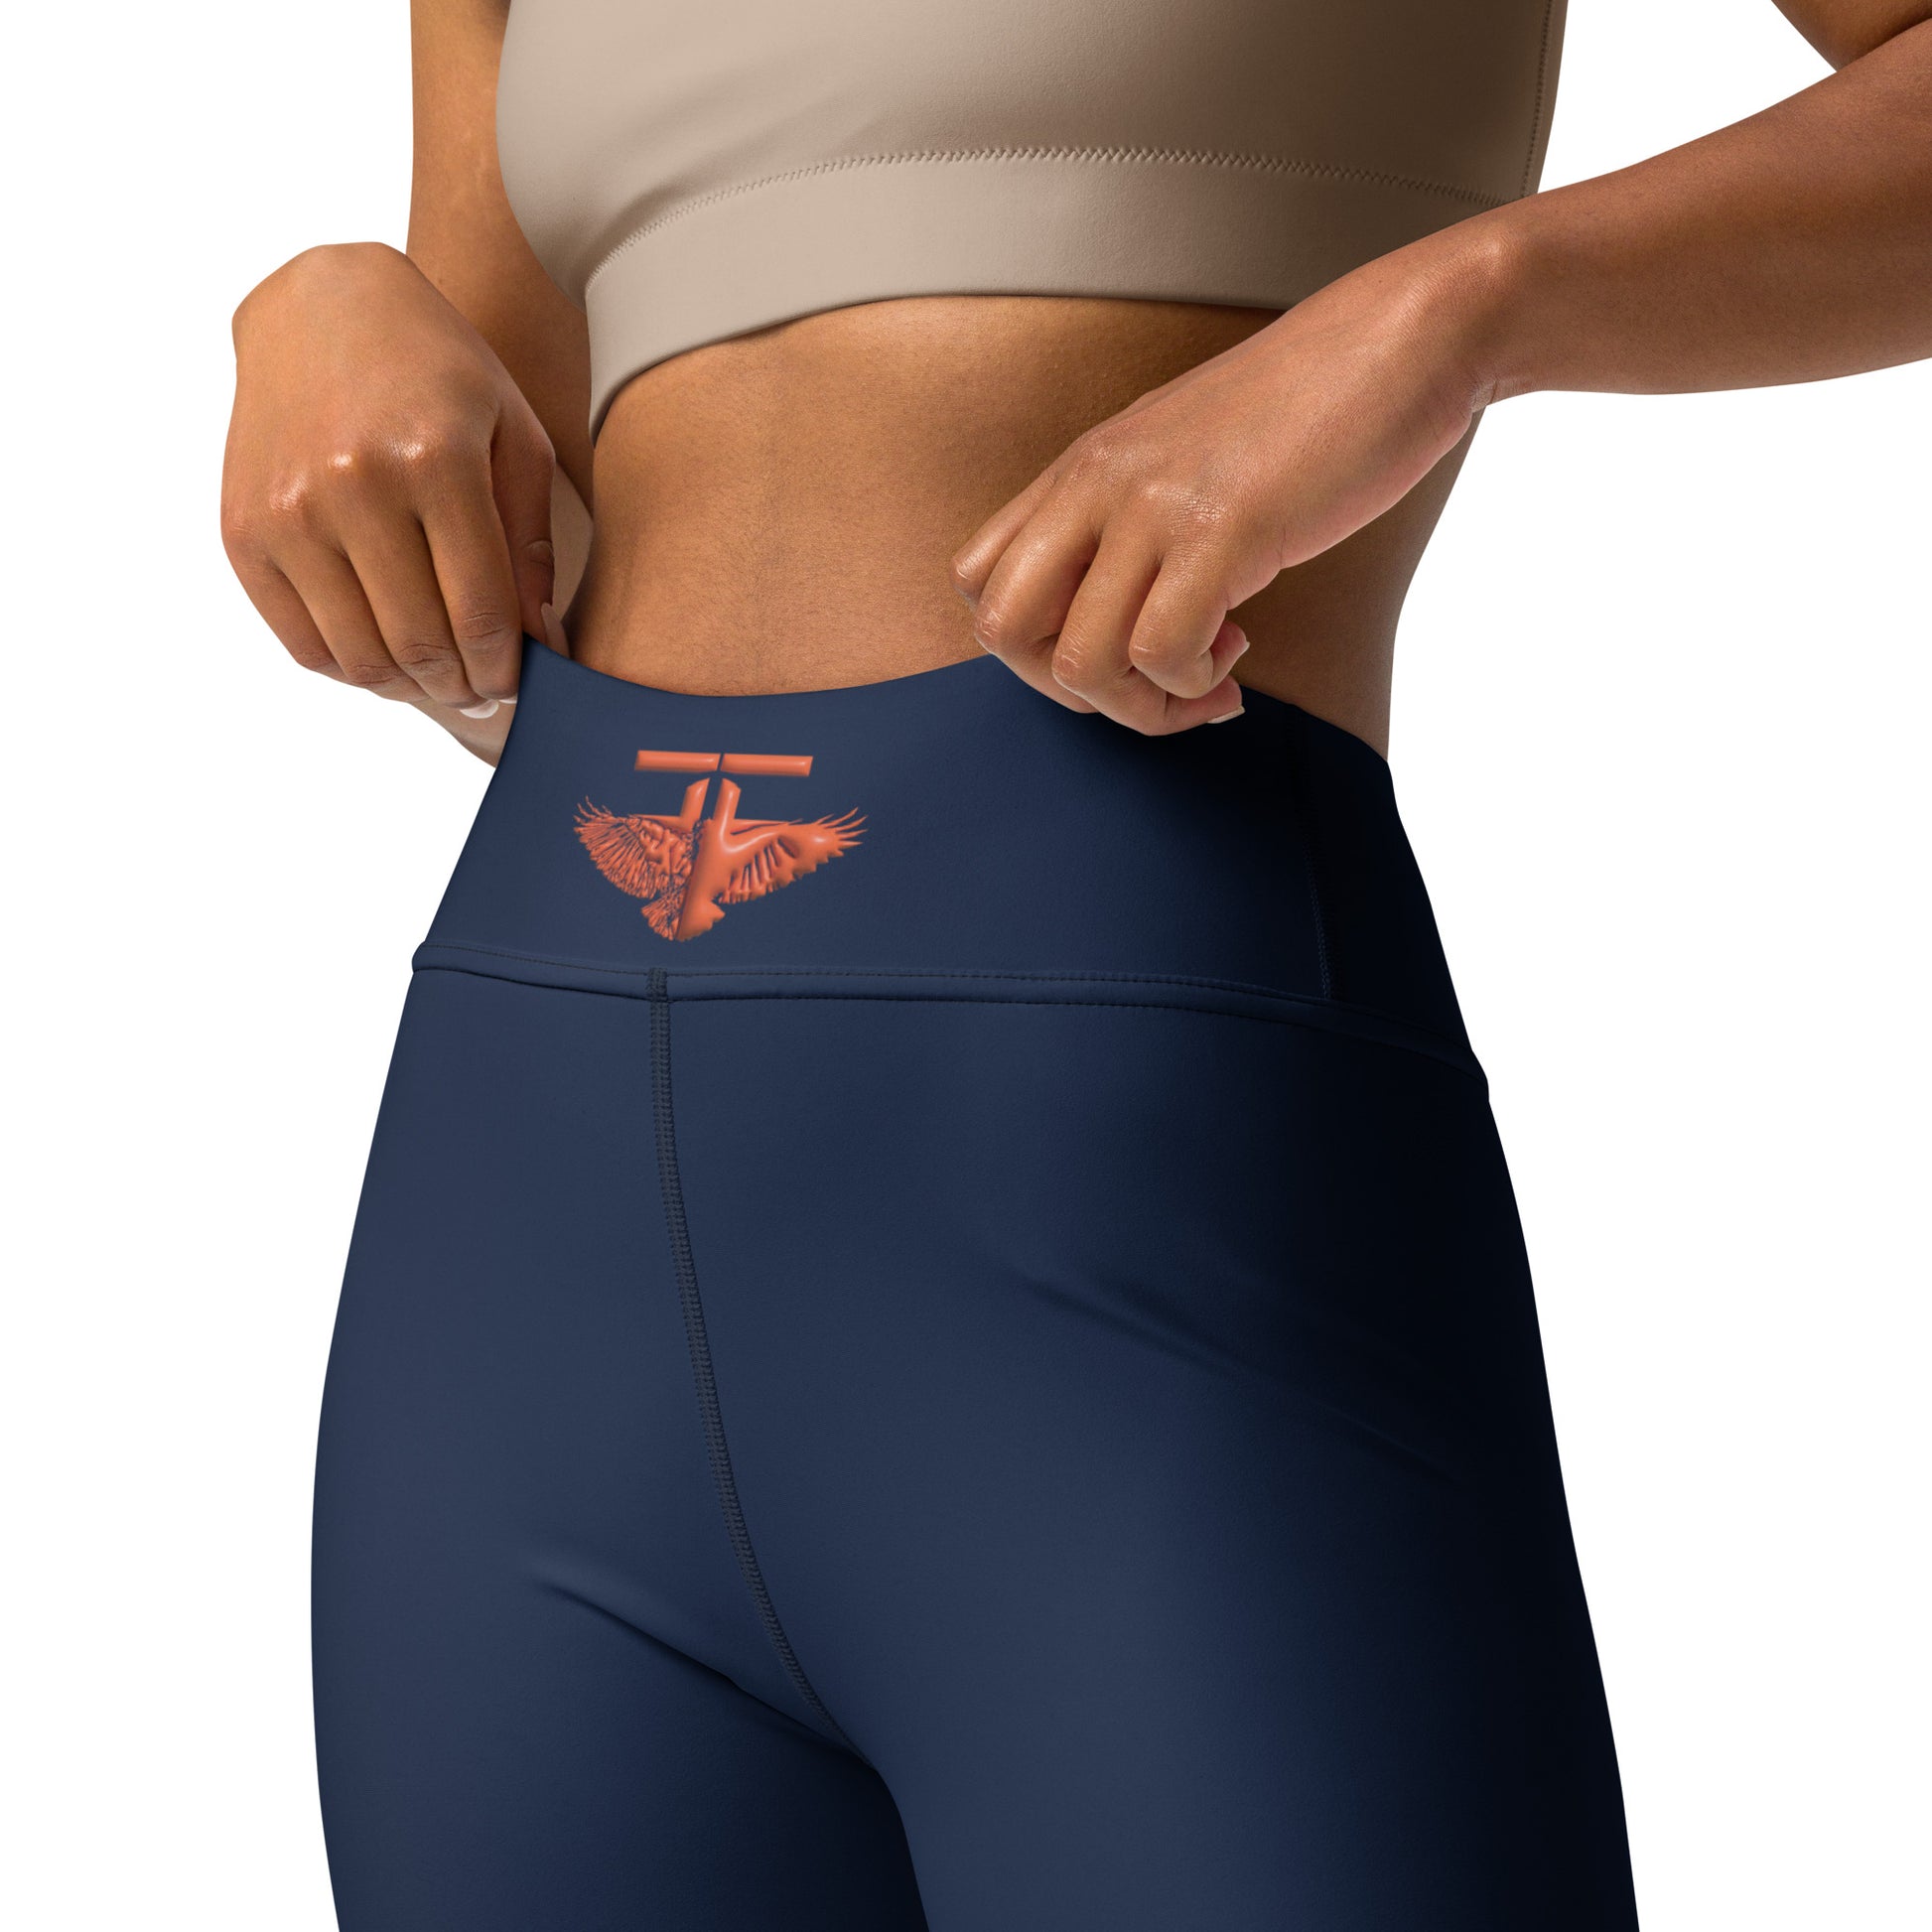 The FLYTE Brand Navy Yoga Leggings (Navy w/Orange logo) – The